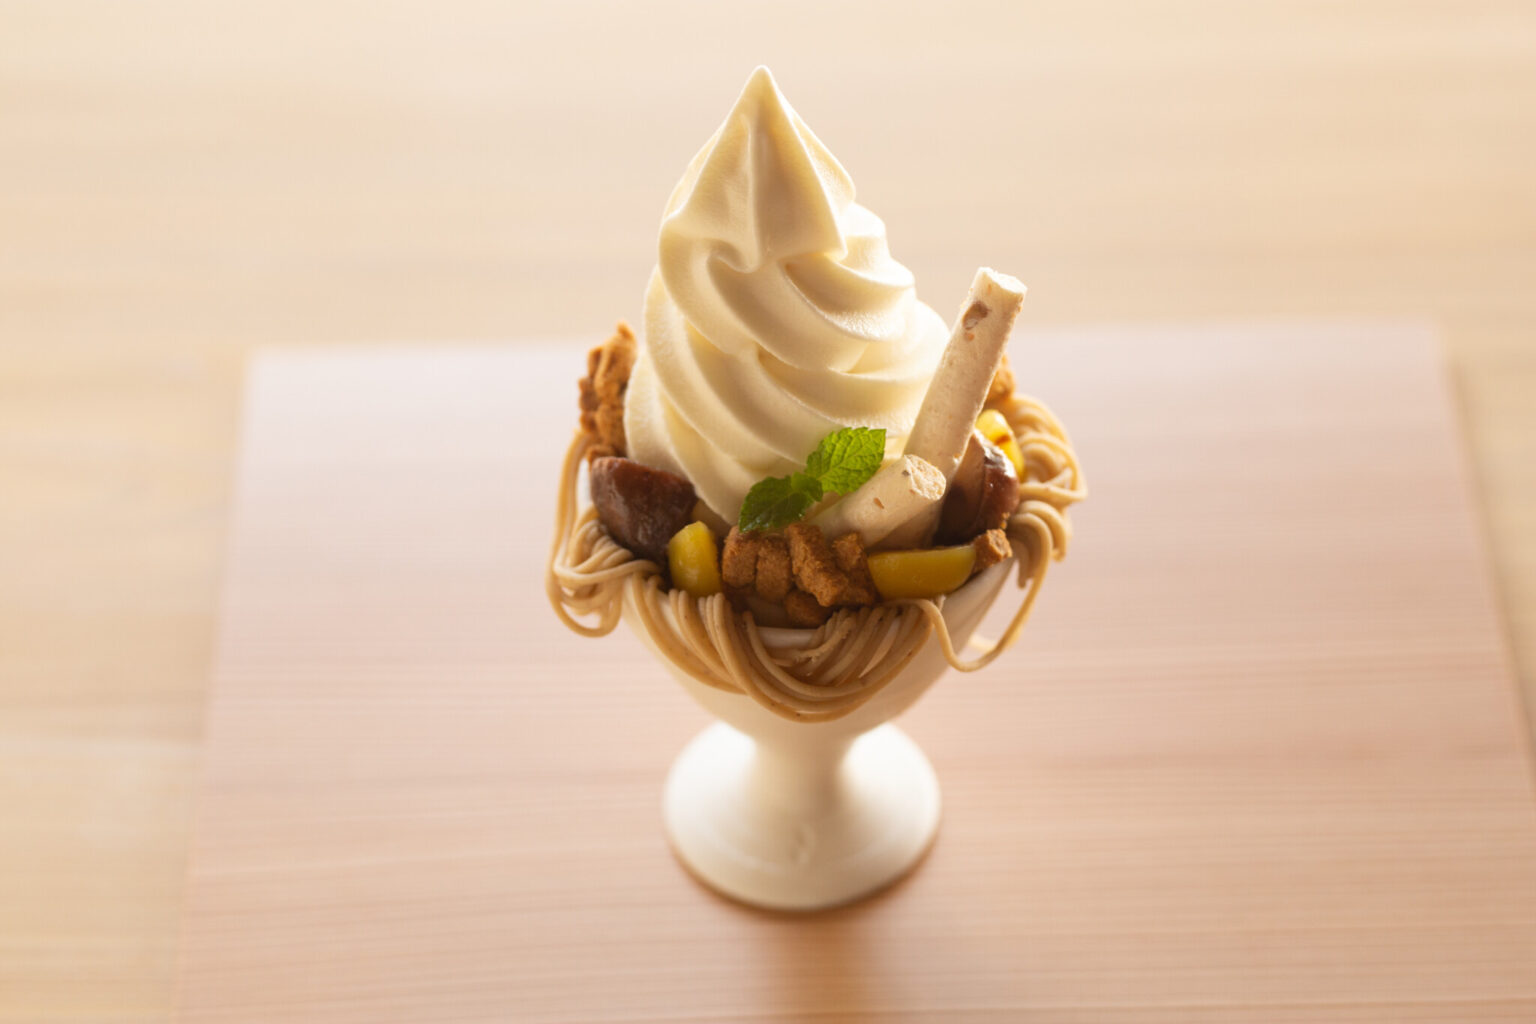 渋皮栗甘露煮のクリームがトッピングされた「丹波栗のソフトクリームパフェ」1,200円。